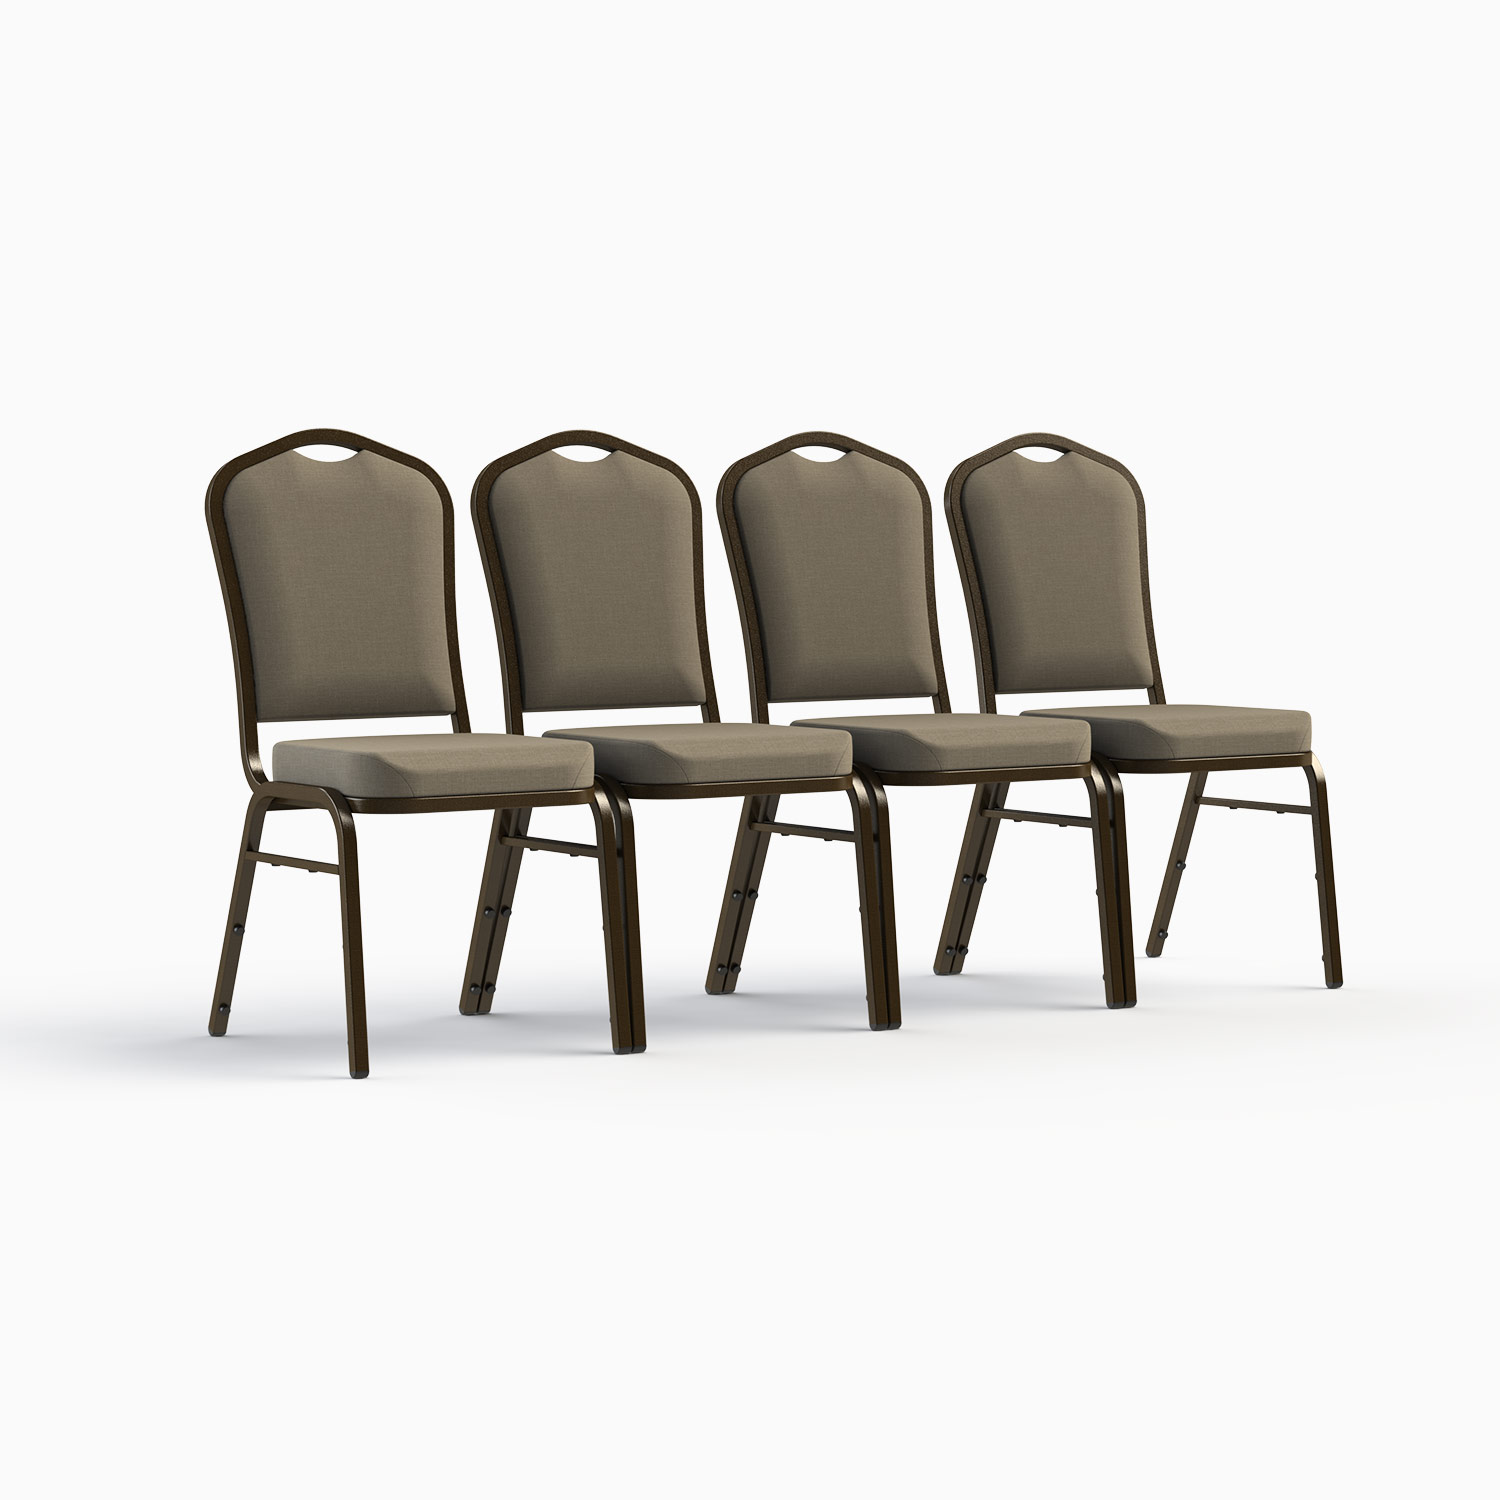 Crown Back Banquet Chair FD-C01- – BizChair